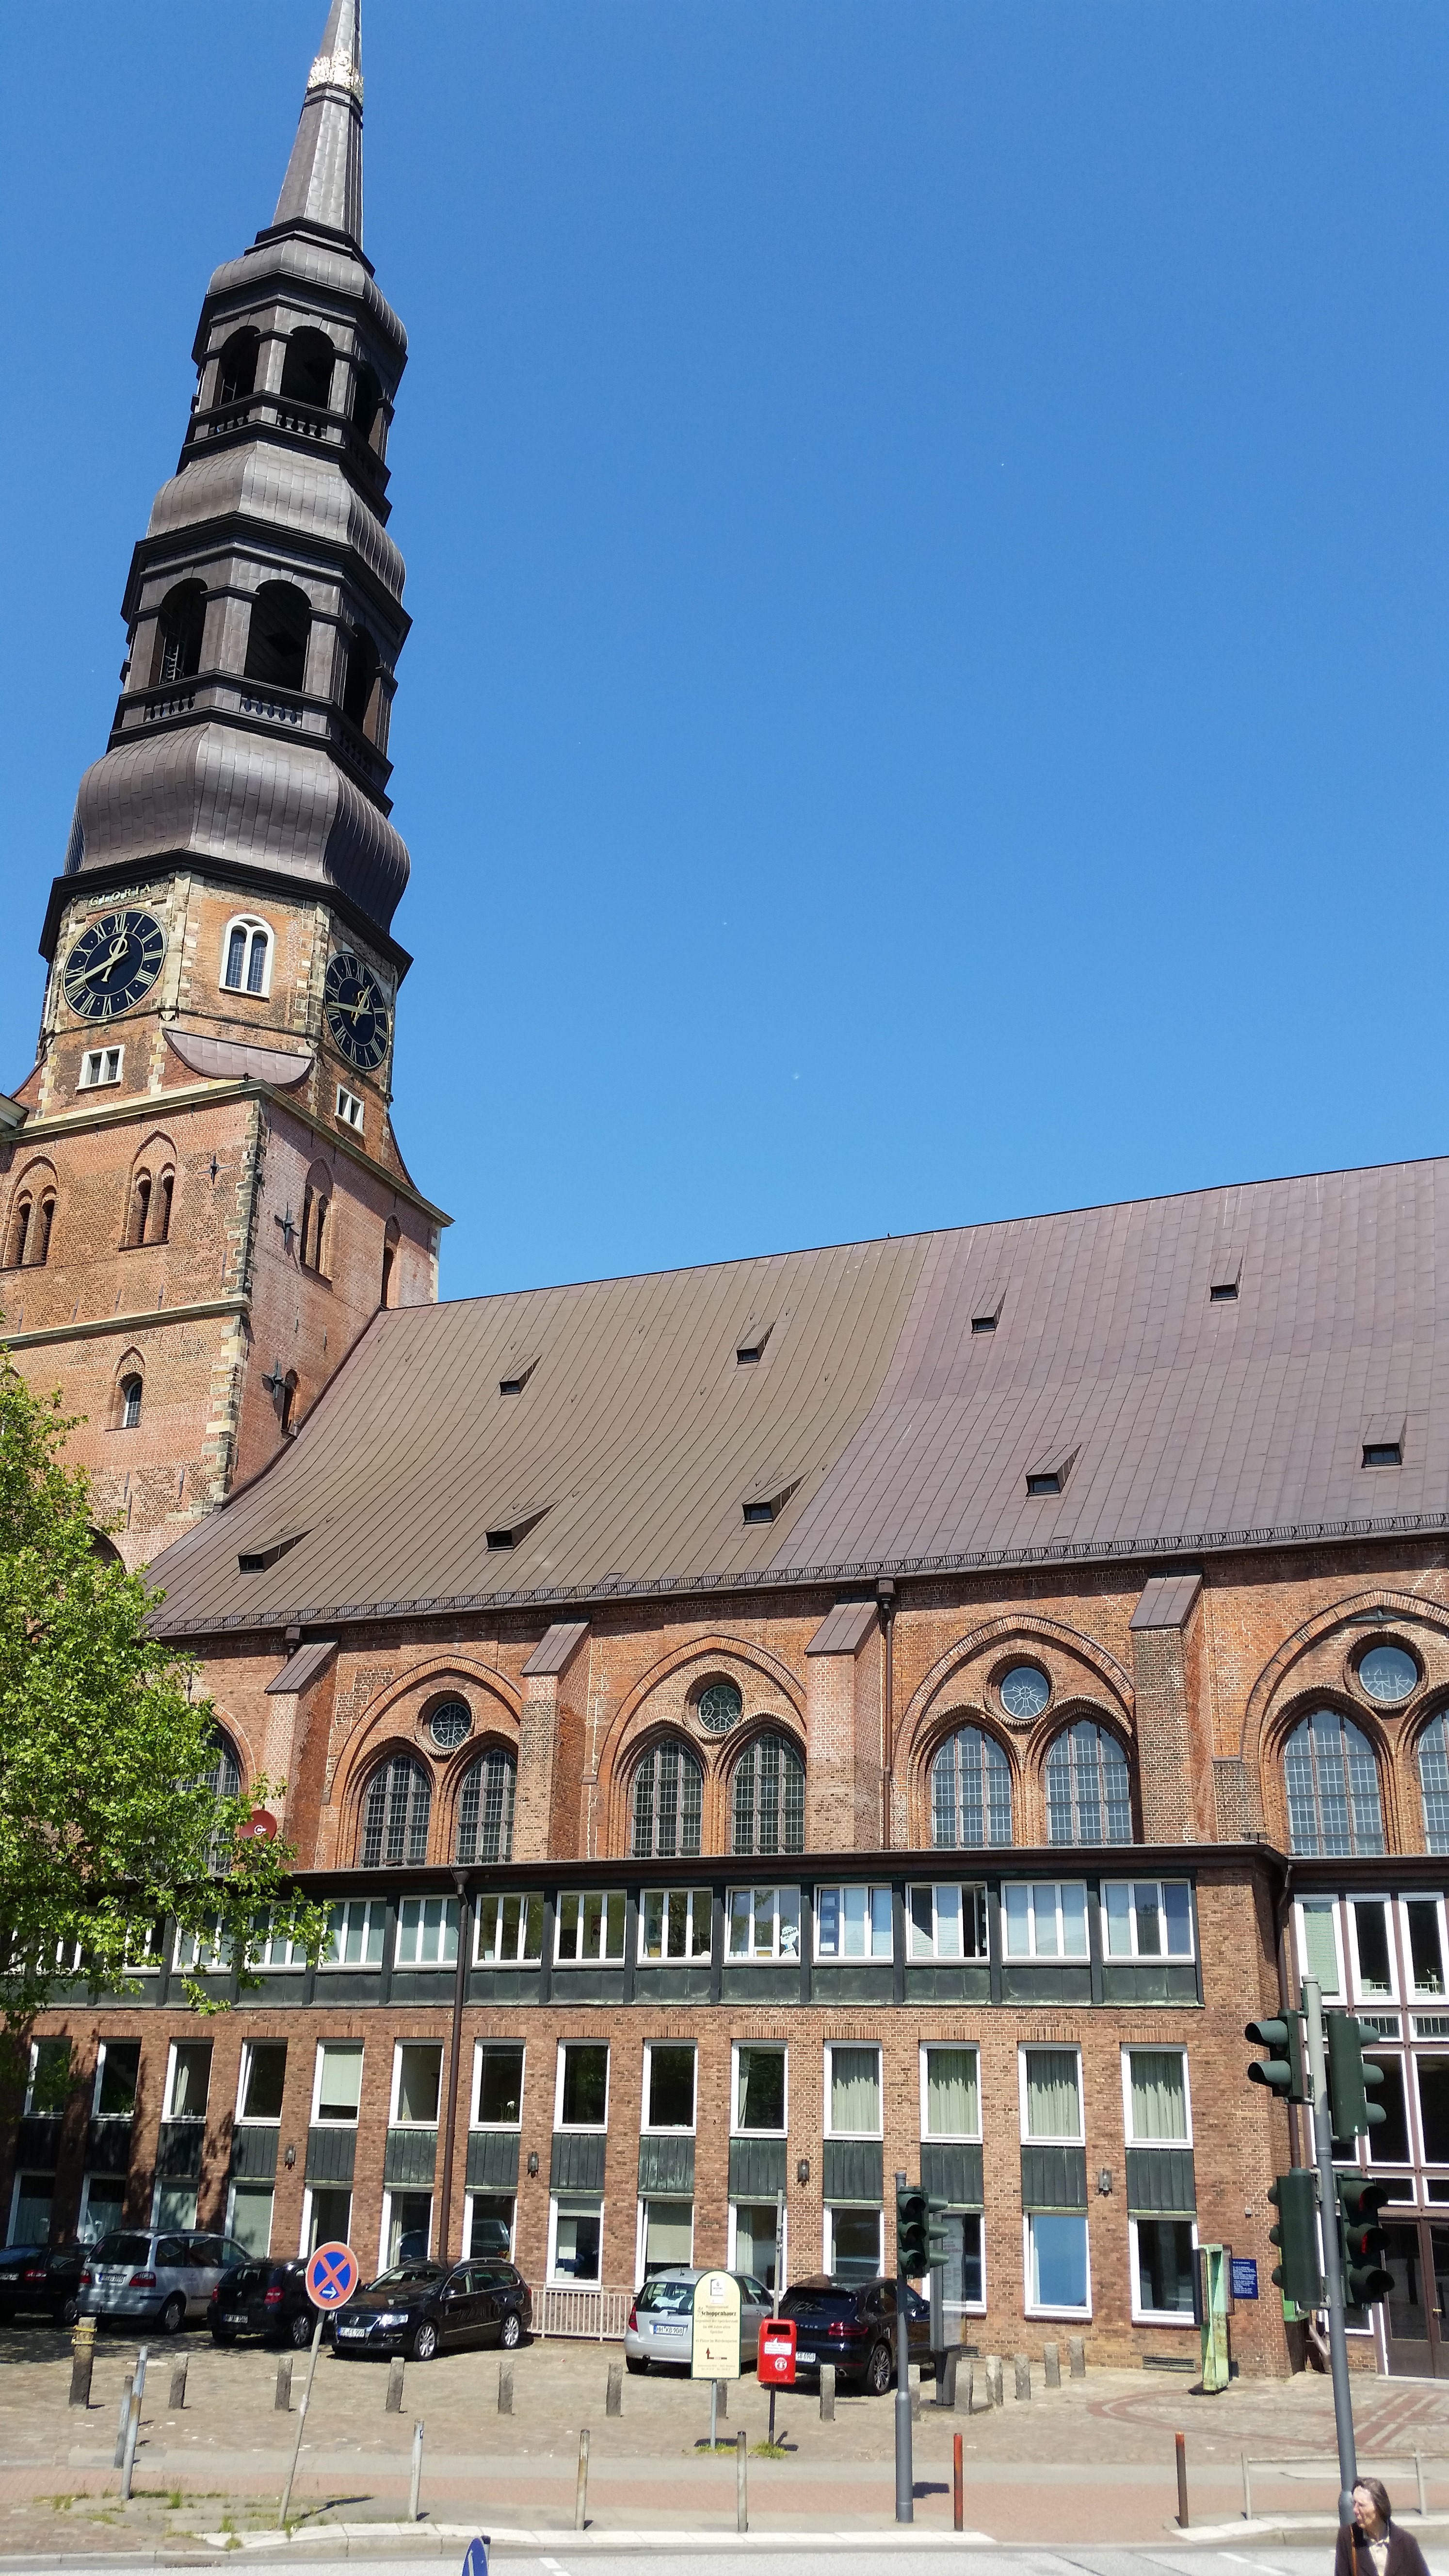 Bild 1 Hauptkirche St. Jacobi - Hauptkirche St. Jacobi in Hamburg